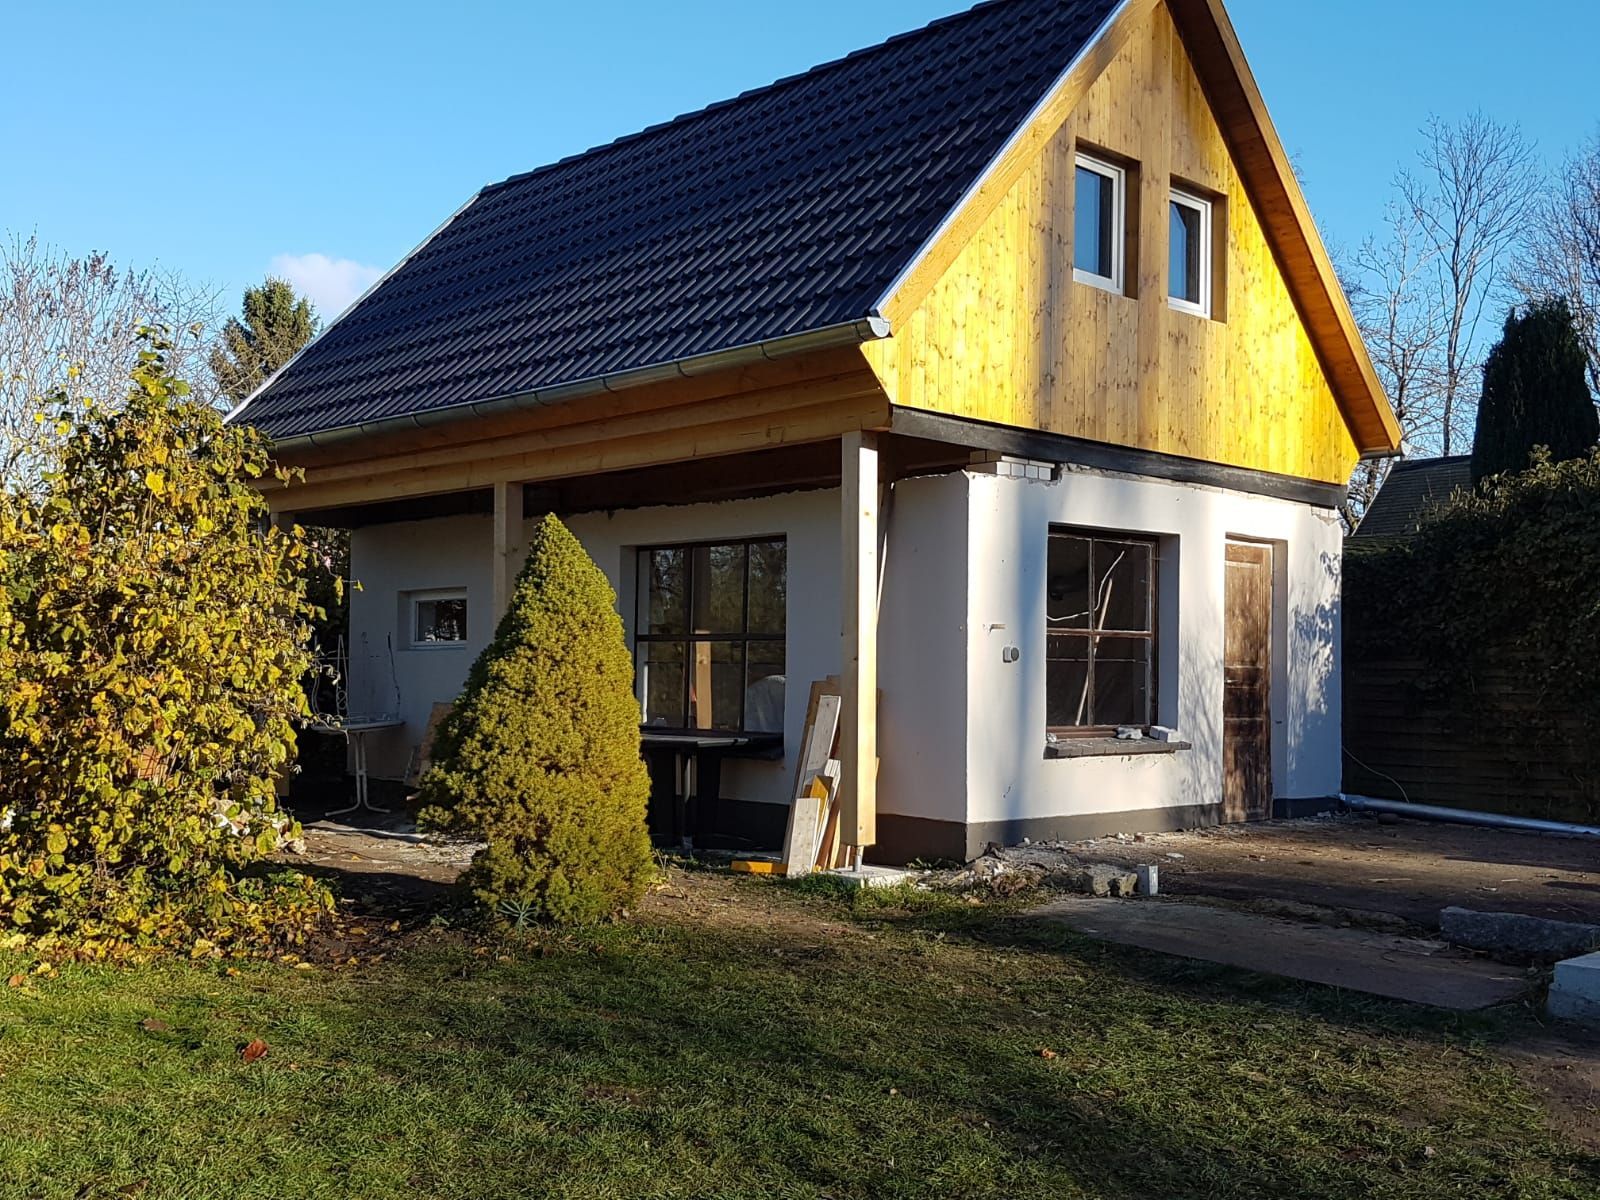 Ein kleines Haus mit einem gelben Dach und einem schwarzen Dach